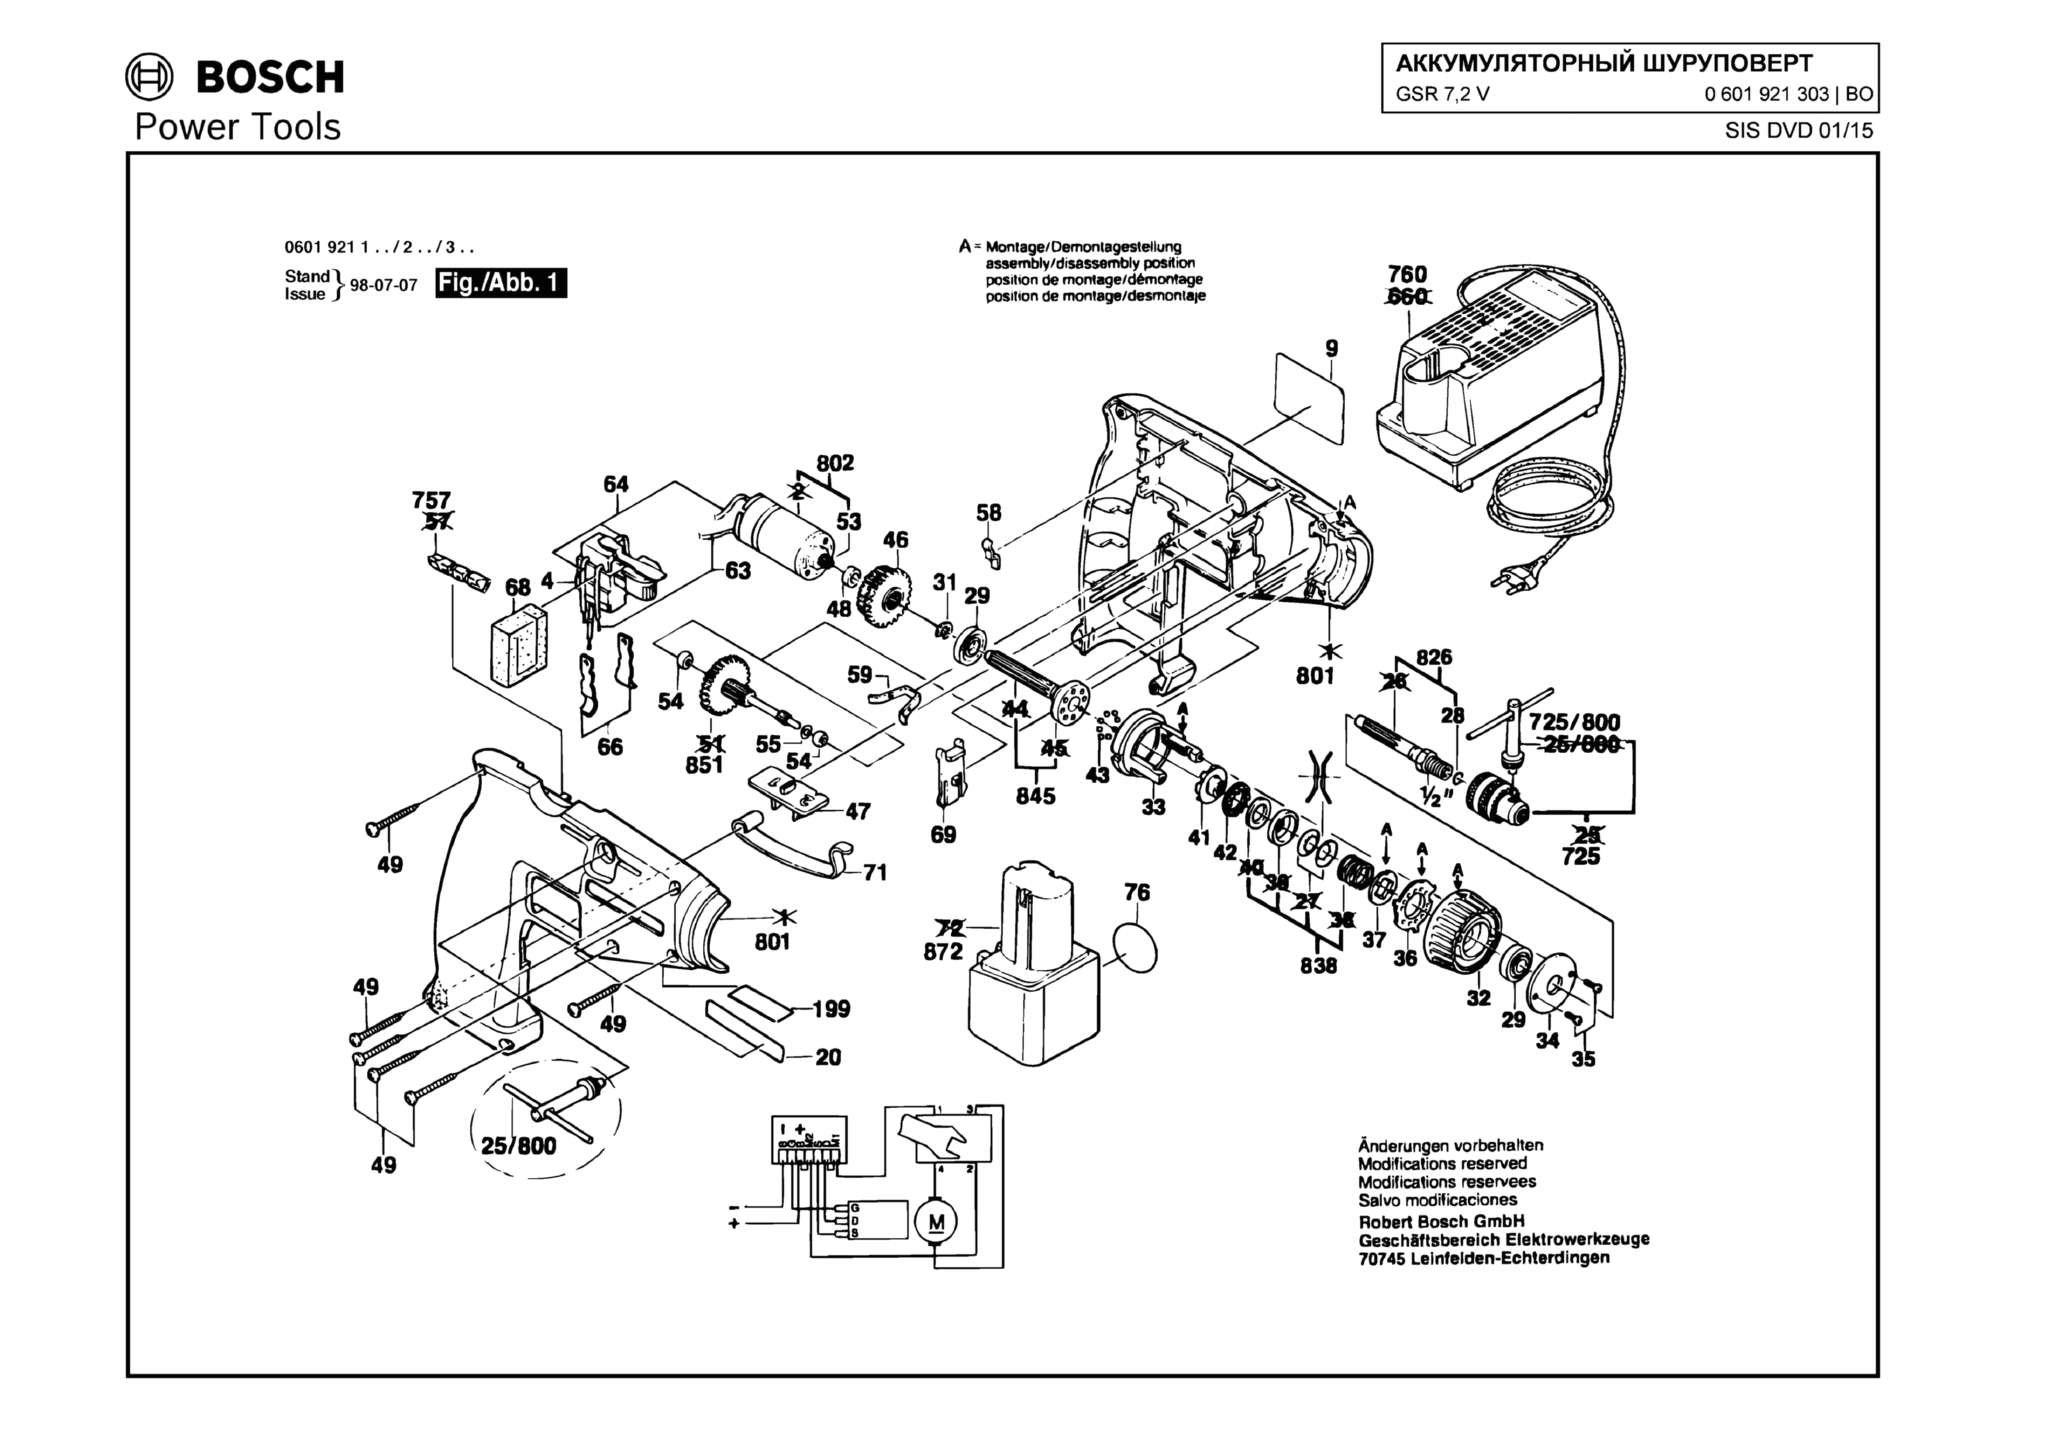 Запчасти, схема и деталировка Bosch GSR 7,2 V (ТИП 0601921303)